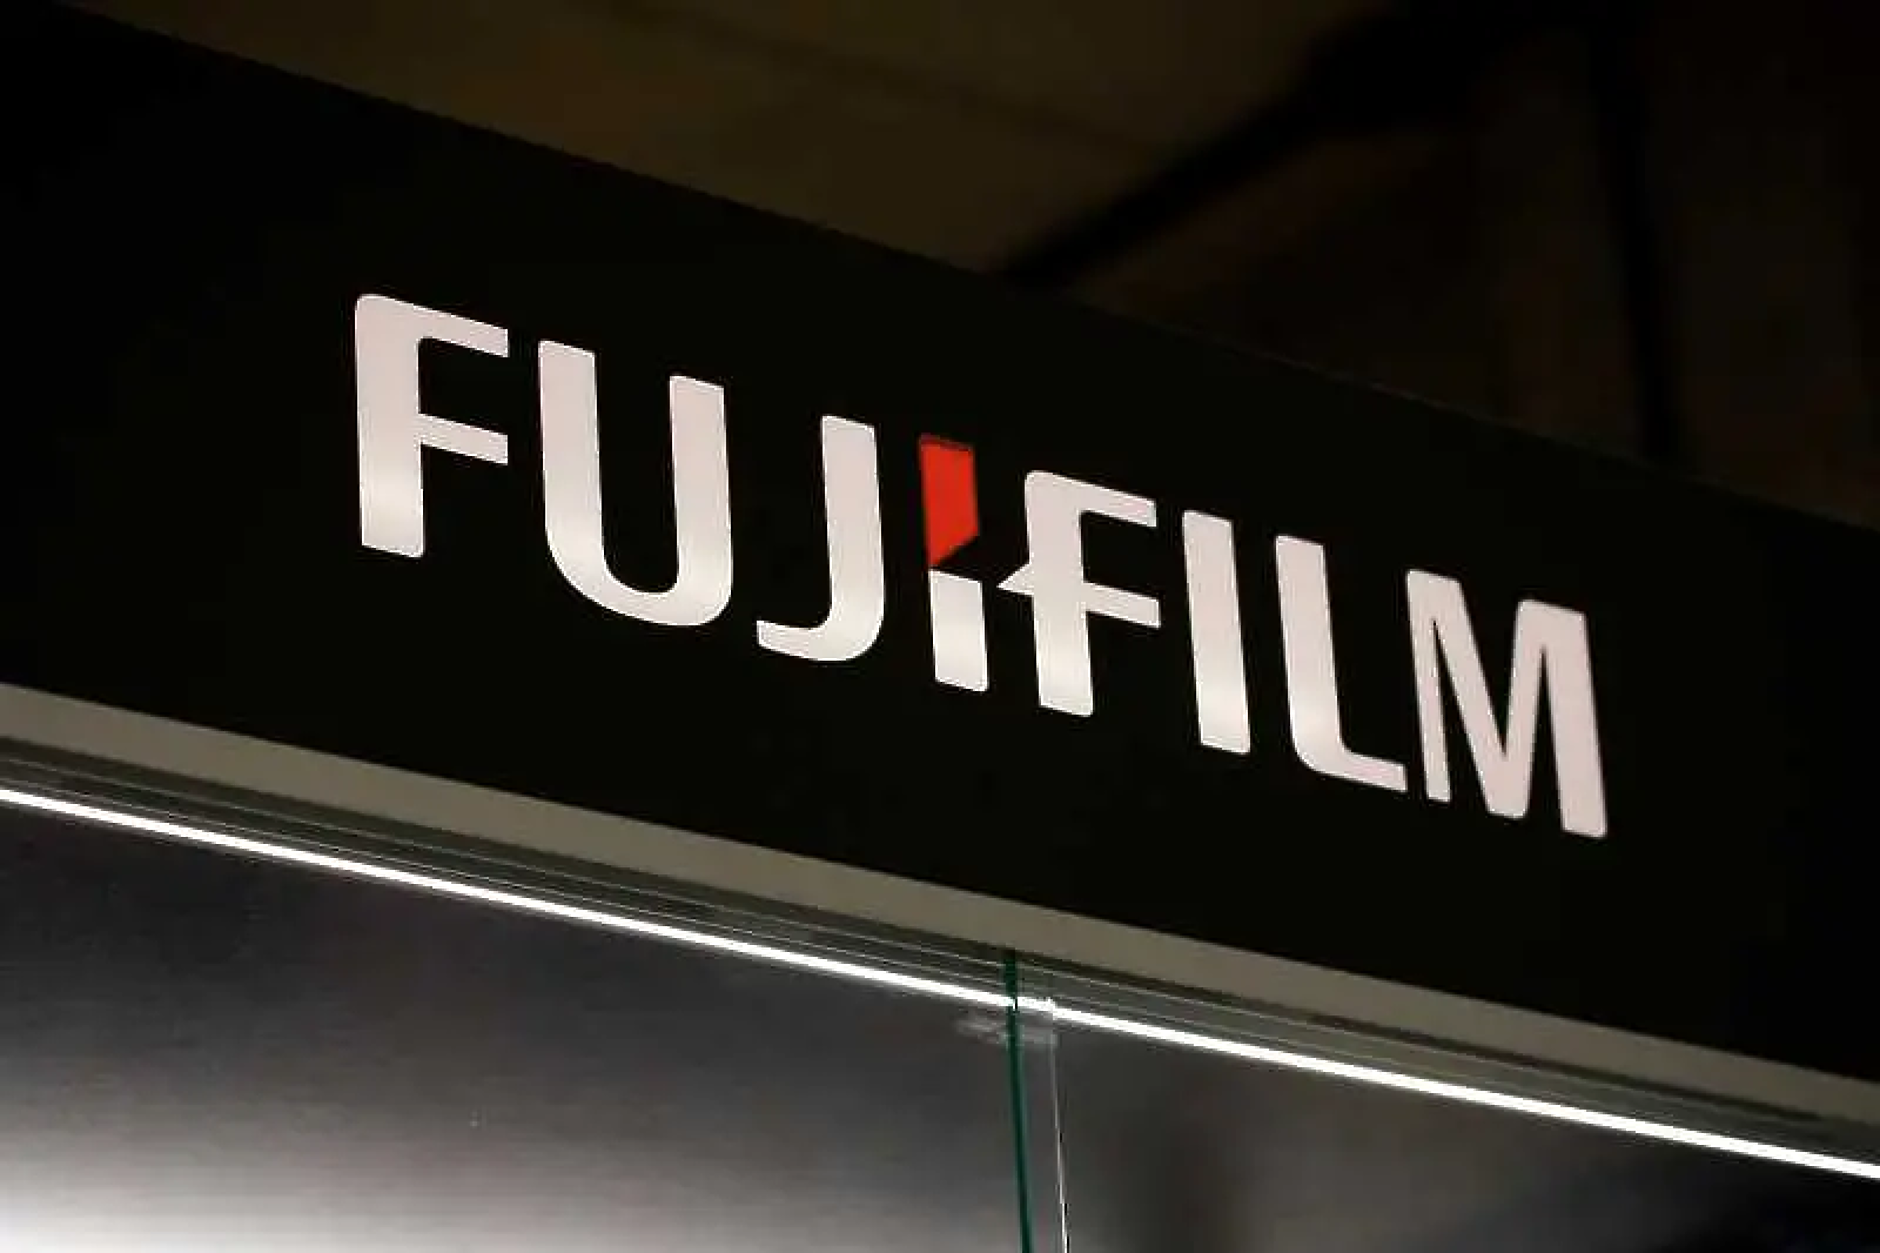 Някога Fujifilm се бореше да продава фотоапарати. Сега не може да се справи с търсенето